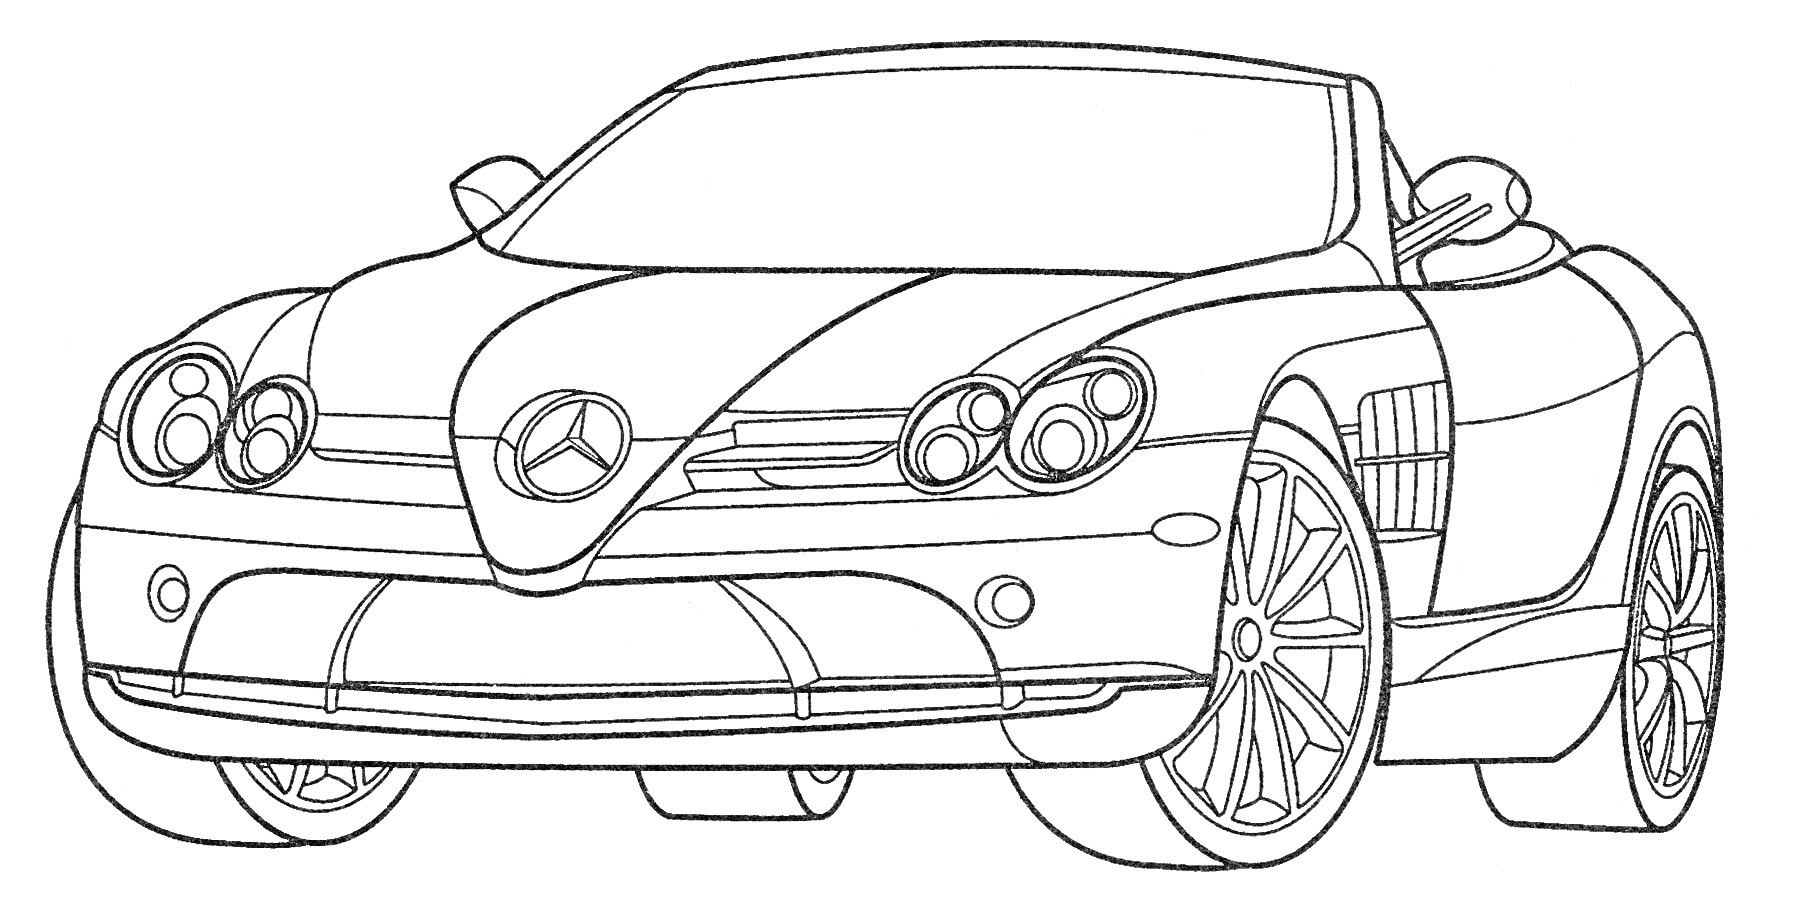 Кабриолет с логотипом Mercedes-Benz, видом спереди, с опущенной крышей и деталями дизайна кузова